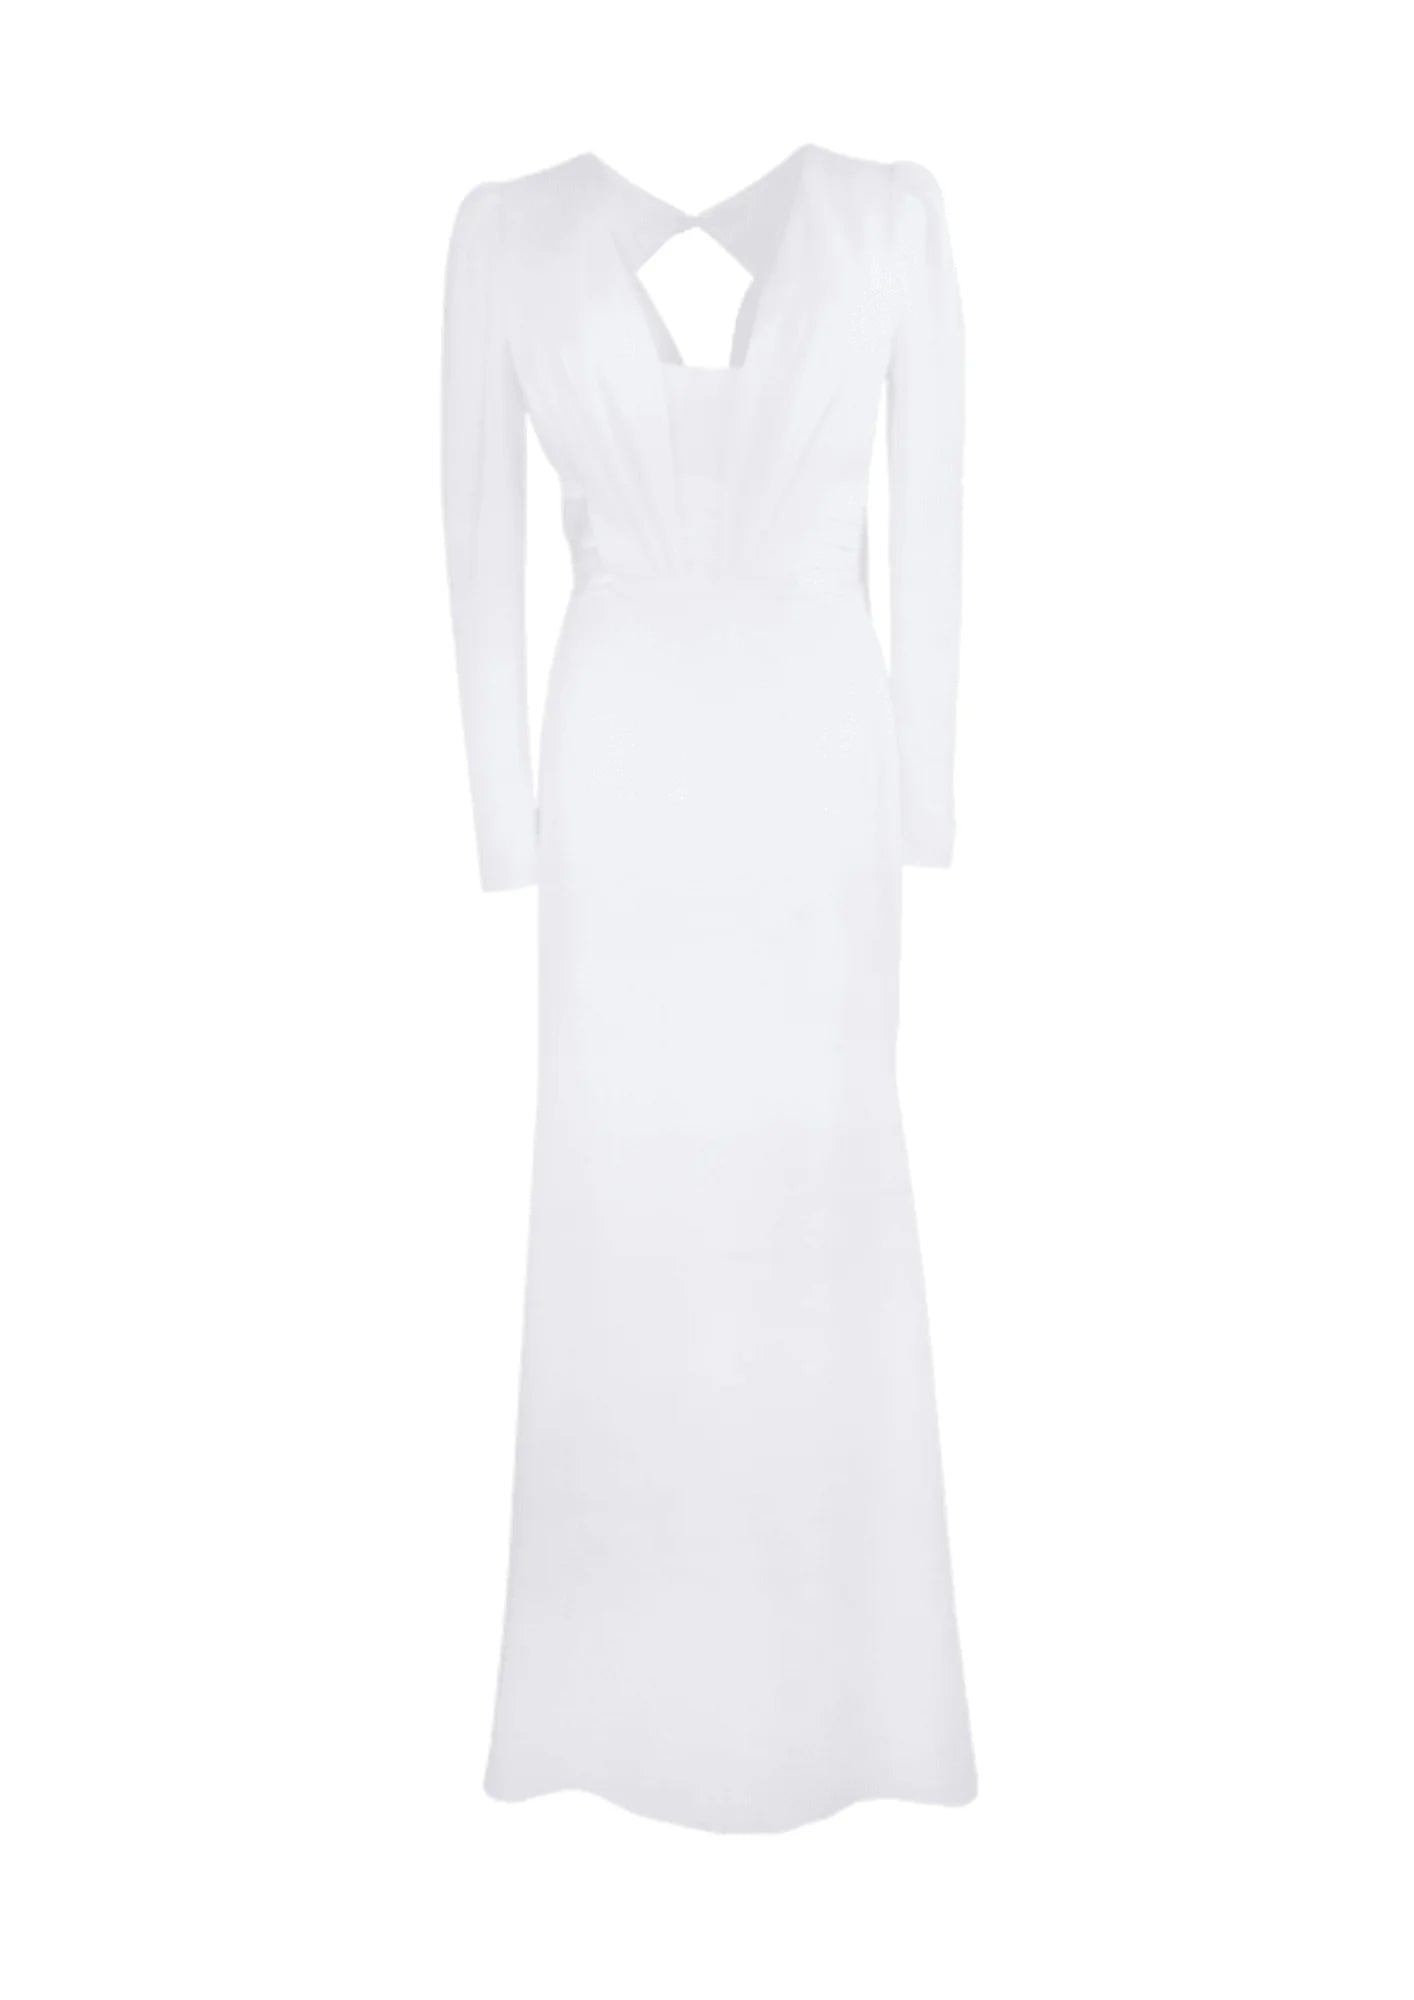 Robe de mariée blanche à manches longues